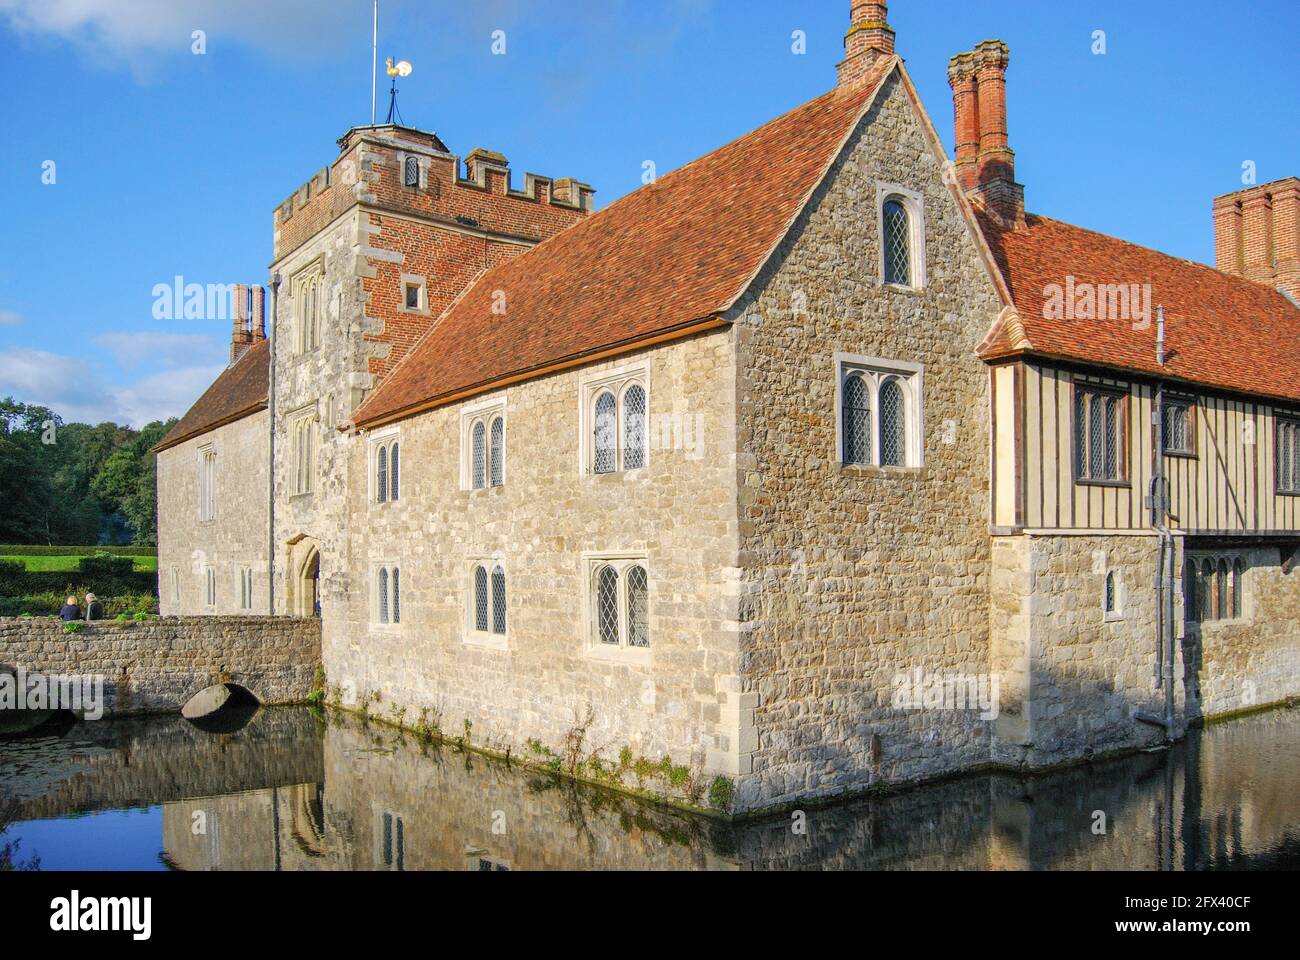 14th century Ightham Mote medieval manor, Ightham, Kent, England, United Kingdom Stock Photo